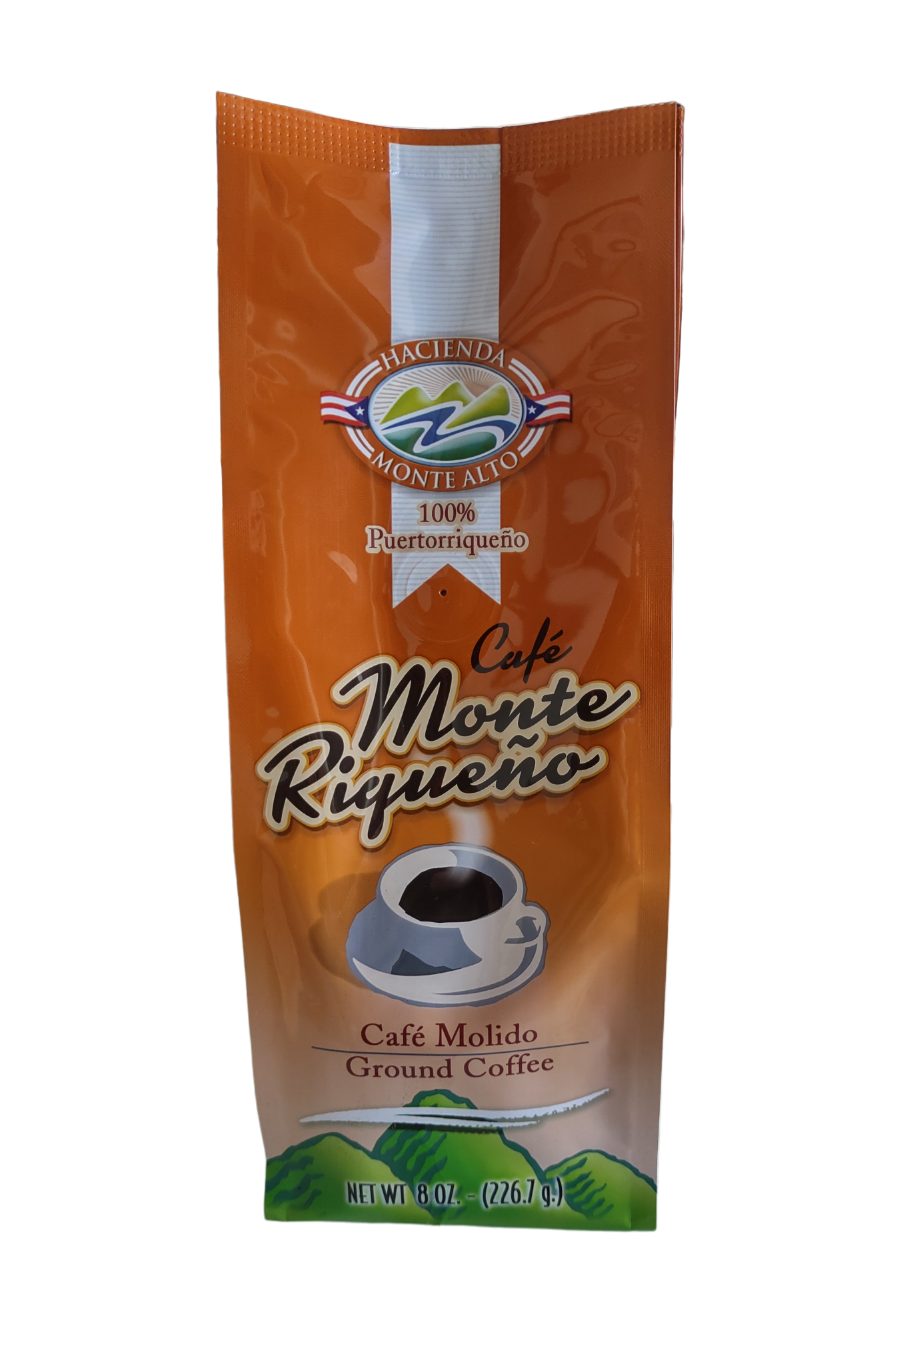 Café molido Monte Riqueño, 8oz